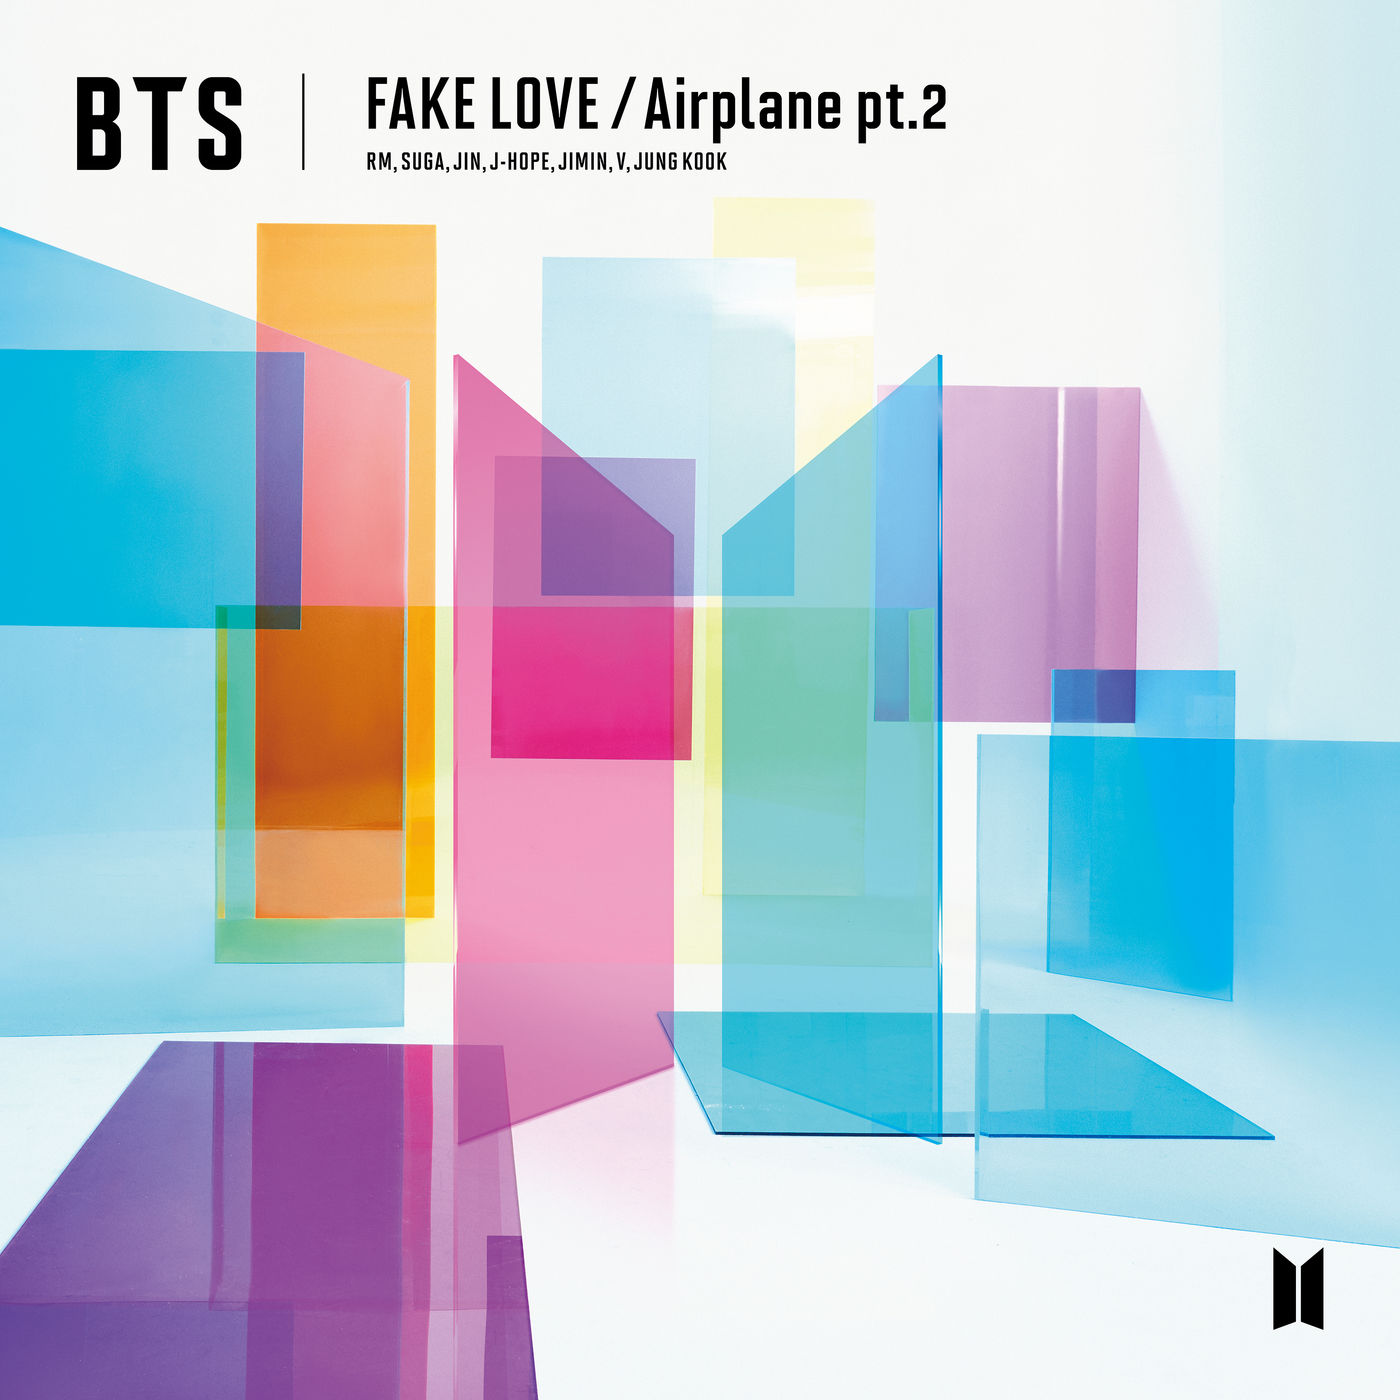 دانلود آلبوم BTS به نام (2018) - FAKE LOVE - Airplane pt.2 با کیفیت FLAC 🔥